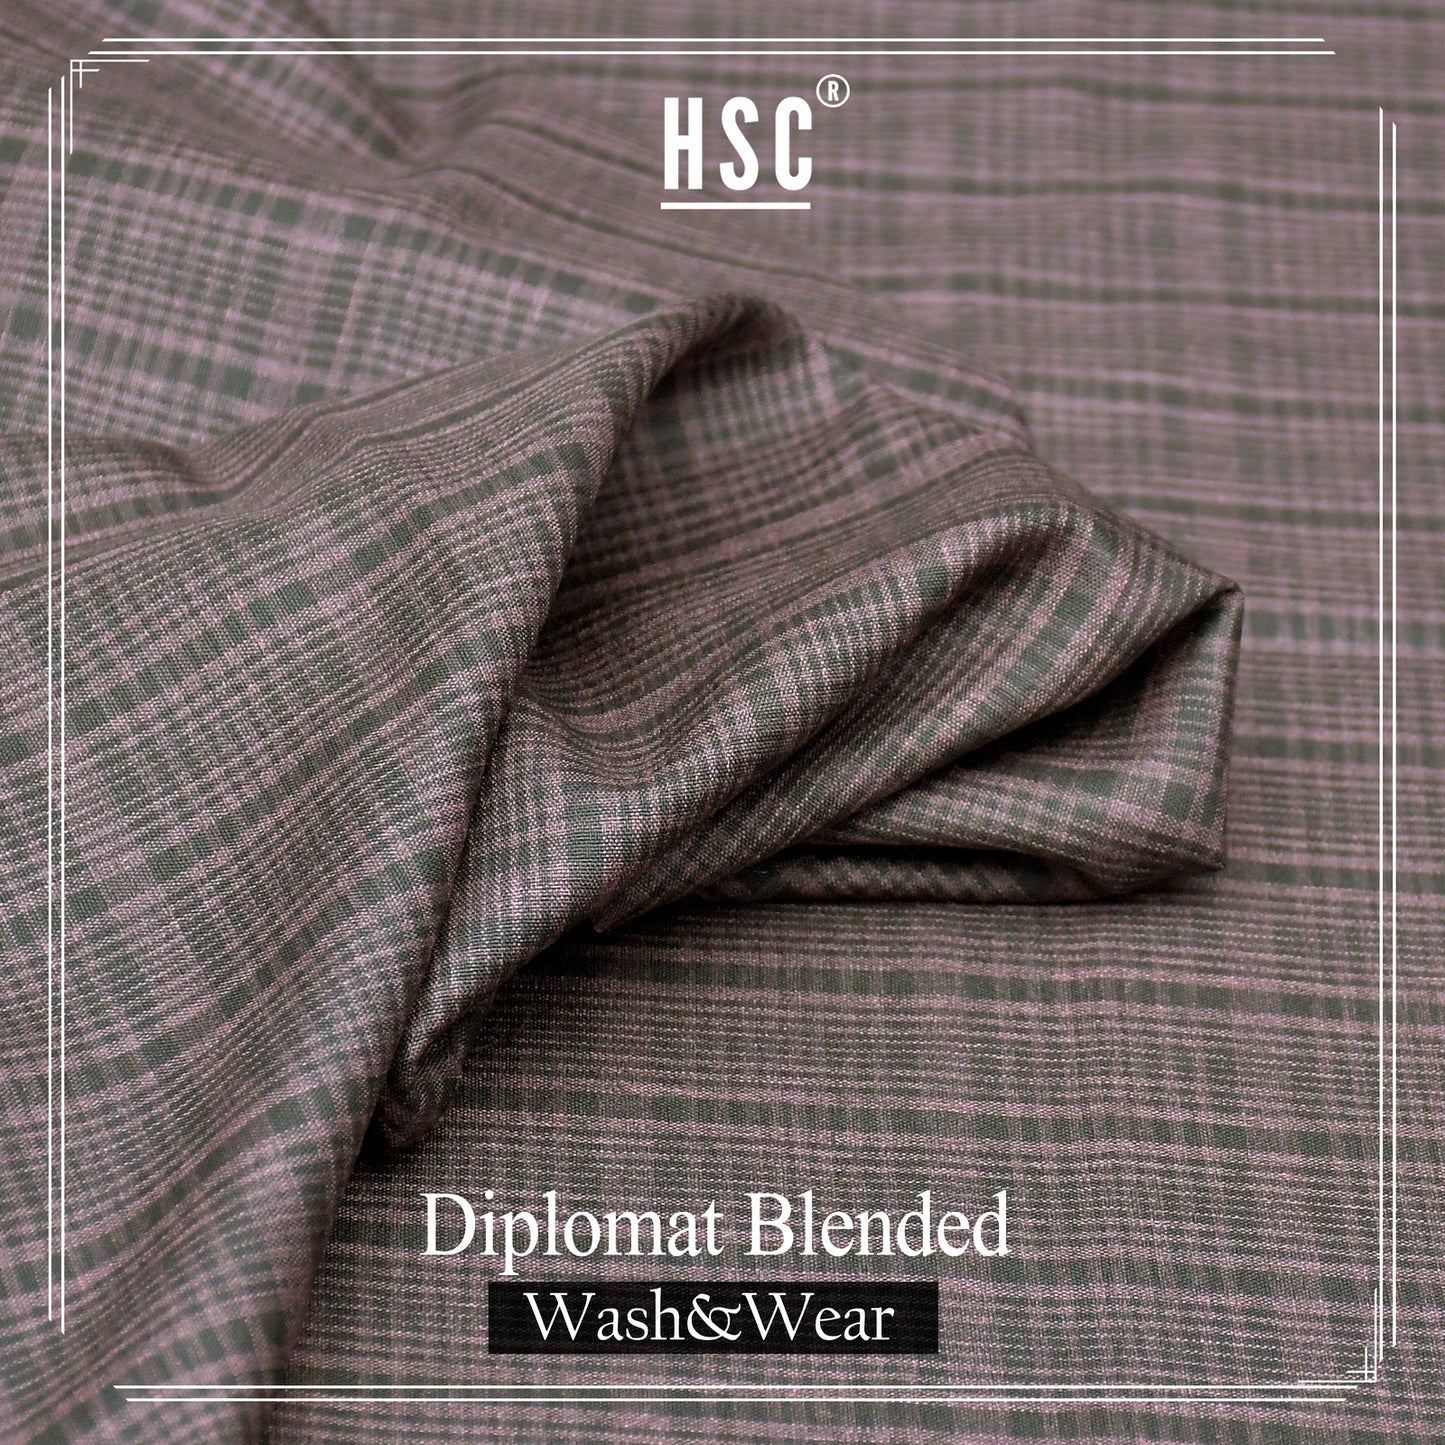 Buy1 Get 1 Free Diplomat Blended Wash&Wear - DBW3 HSC BLENDED